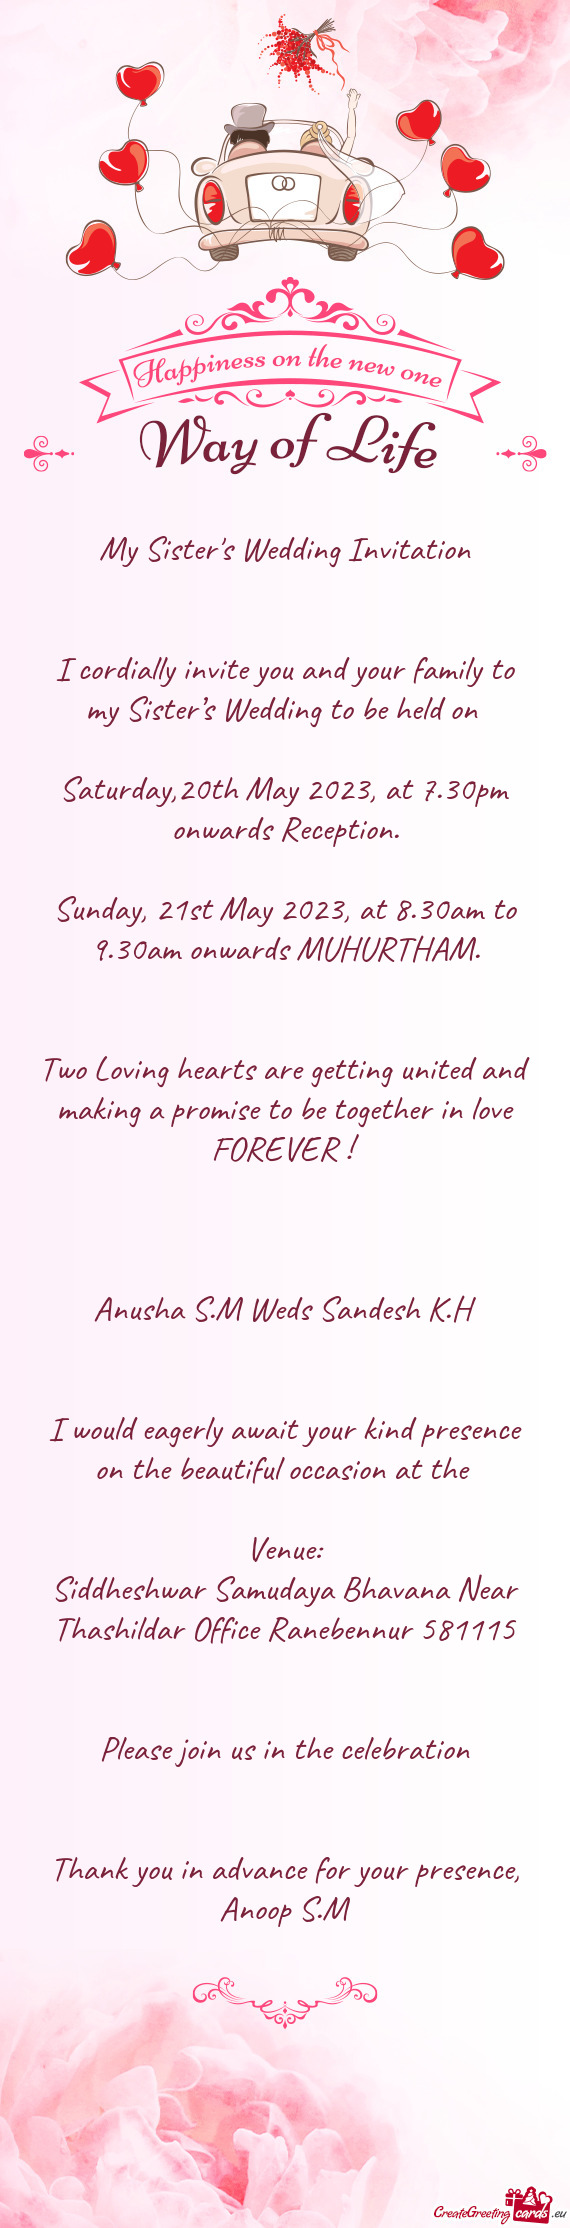 Anusha S.M Weds Sandesh K.H